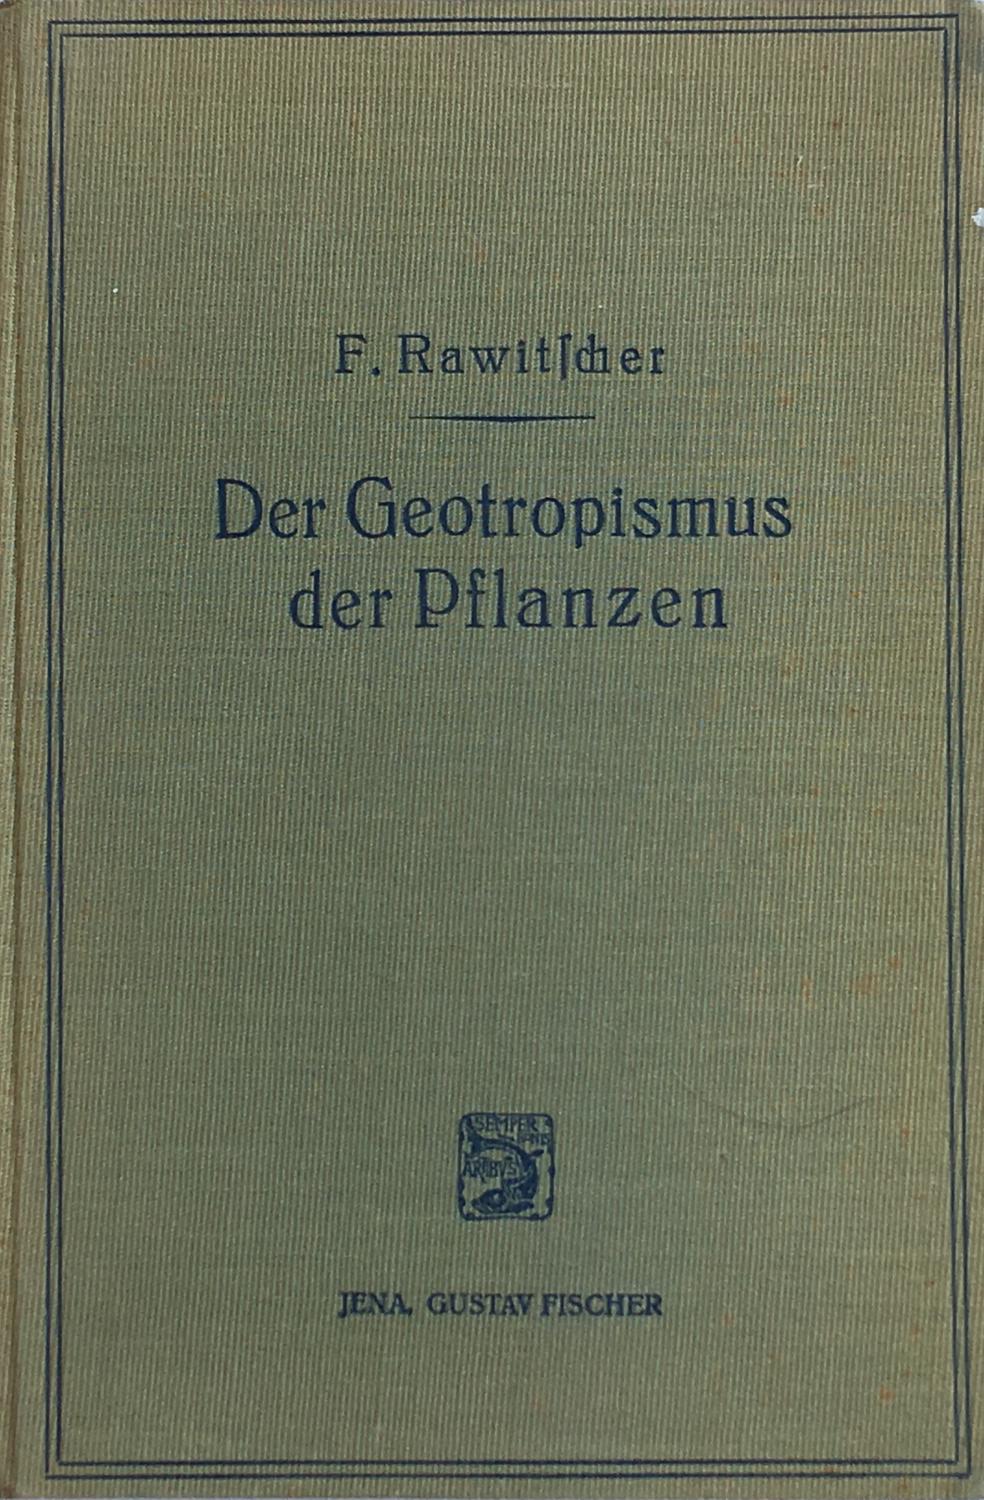 Der Geotropismus der Pflanzen by Rawitscher, F.: V.g. Publisher's cloth ...